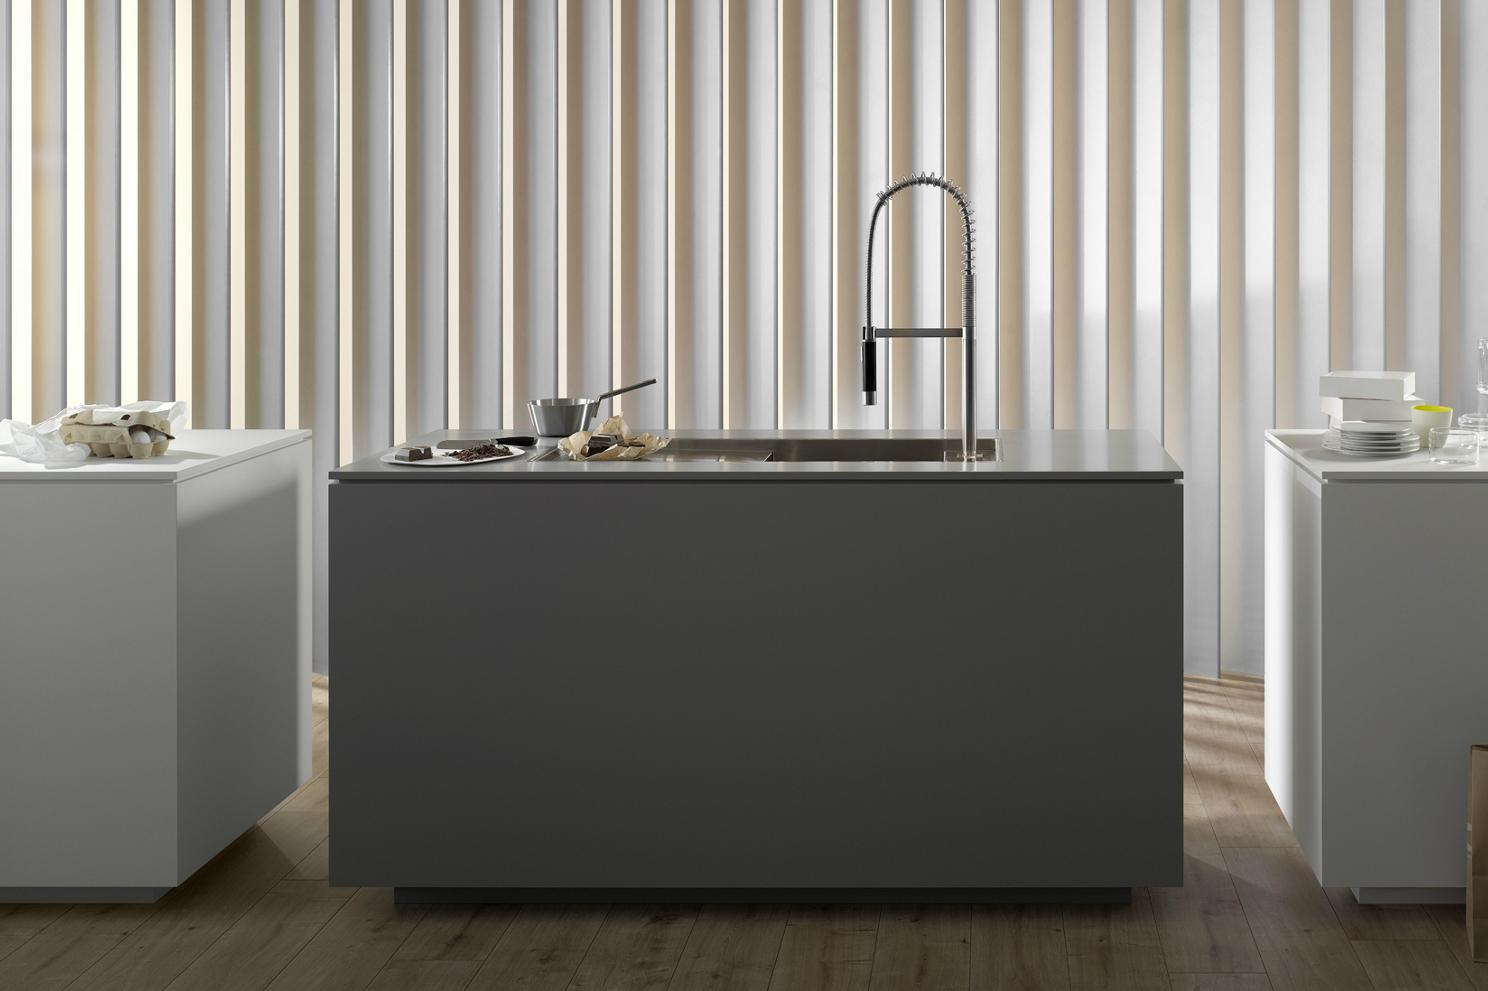 smart water digitizes flow and temperature dornbracht eunit kitchen sink away